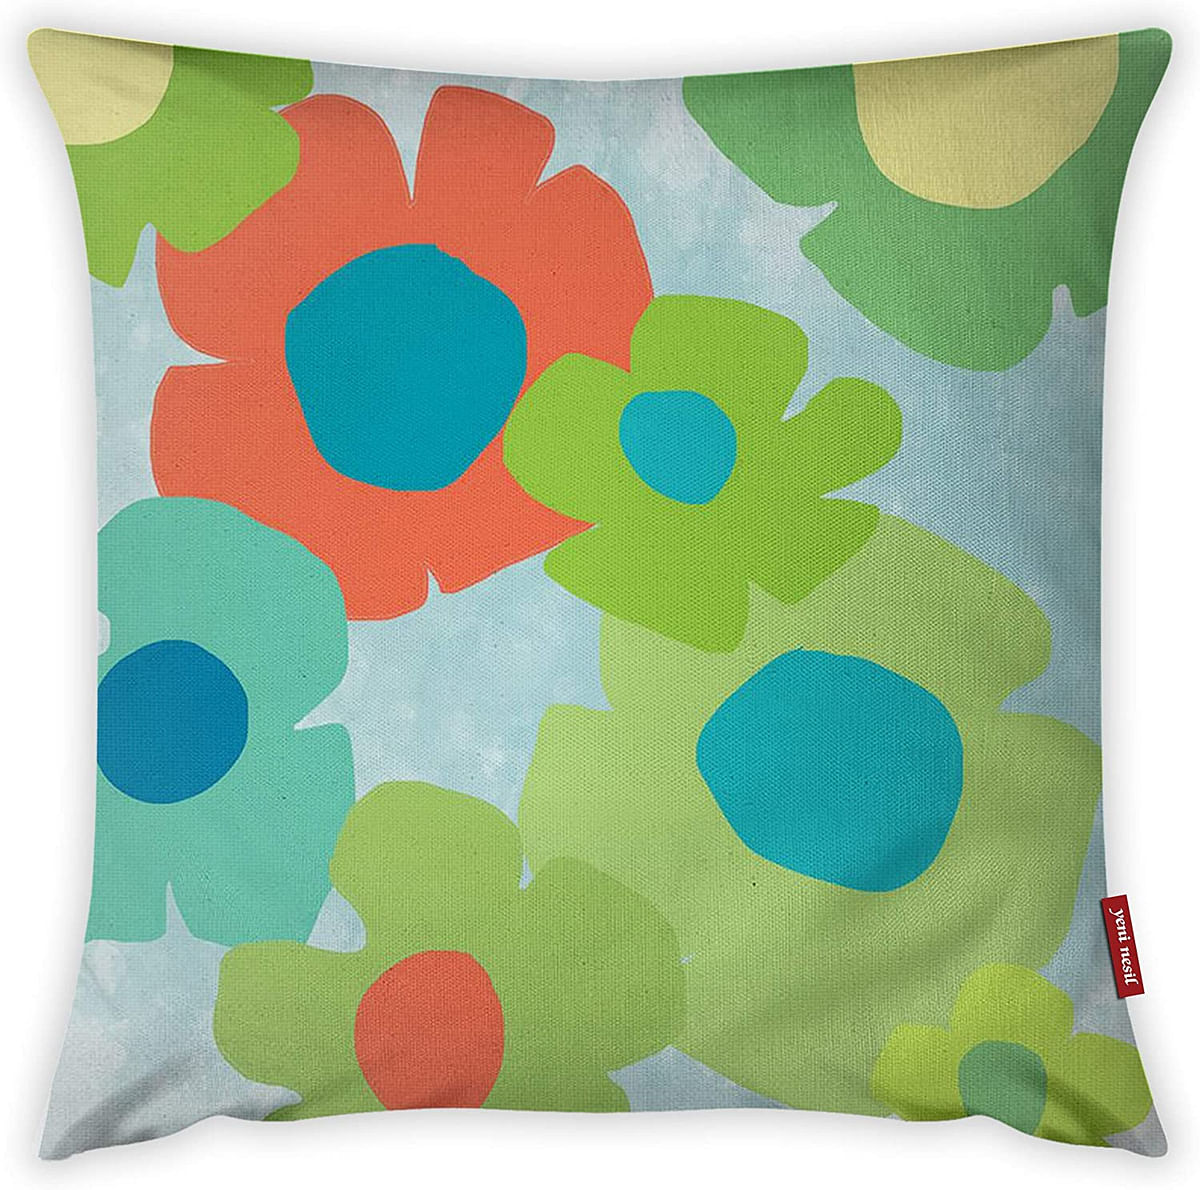 Mon Desire Decorative Throw Pillow Cover, Multi-Colour, 44 x 44 cm, MDSYST2503